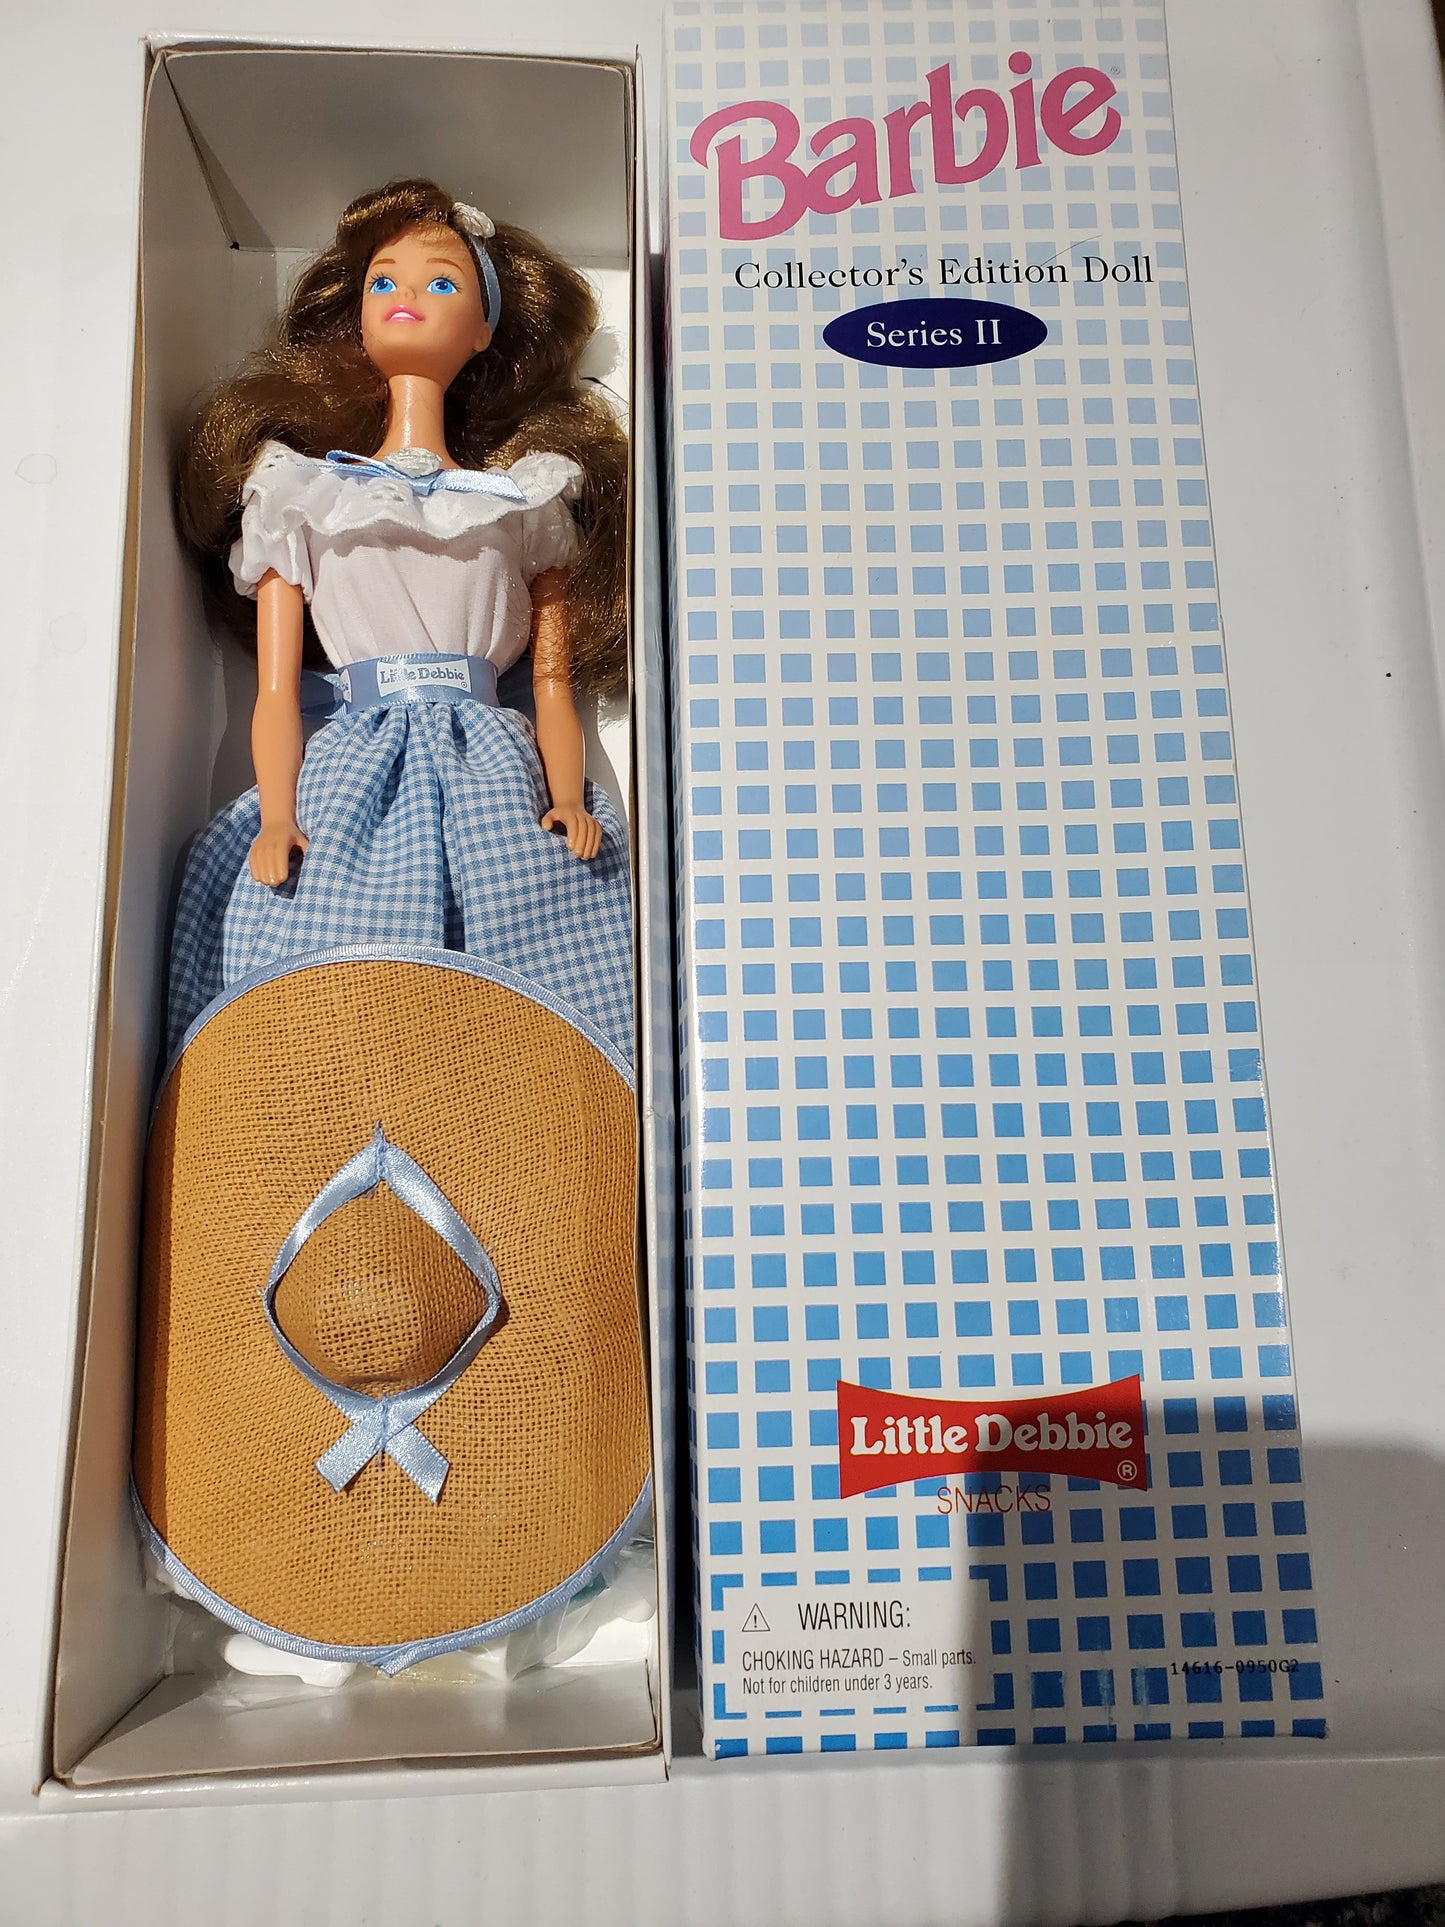 Little Debbie Barbie Doll Brunette Mint in Box - 1995